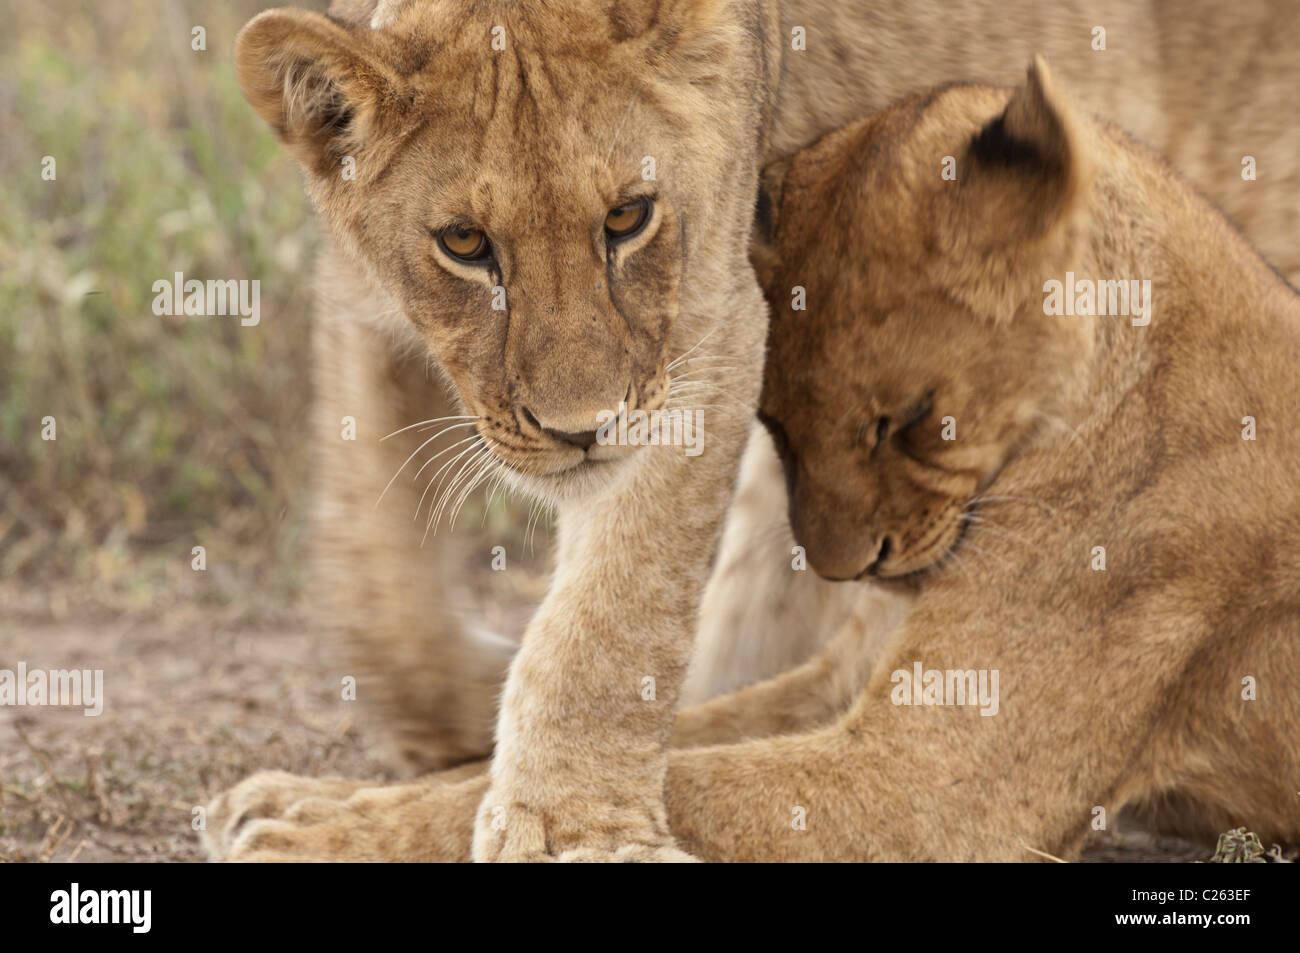 Stock Foto ein Löwenjunges reiben weiter zu einem anderen beim Vorbeigehen, Gruß Verhalten anzeigen. Stockfoto